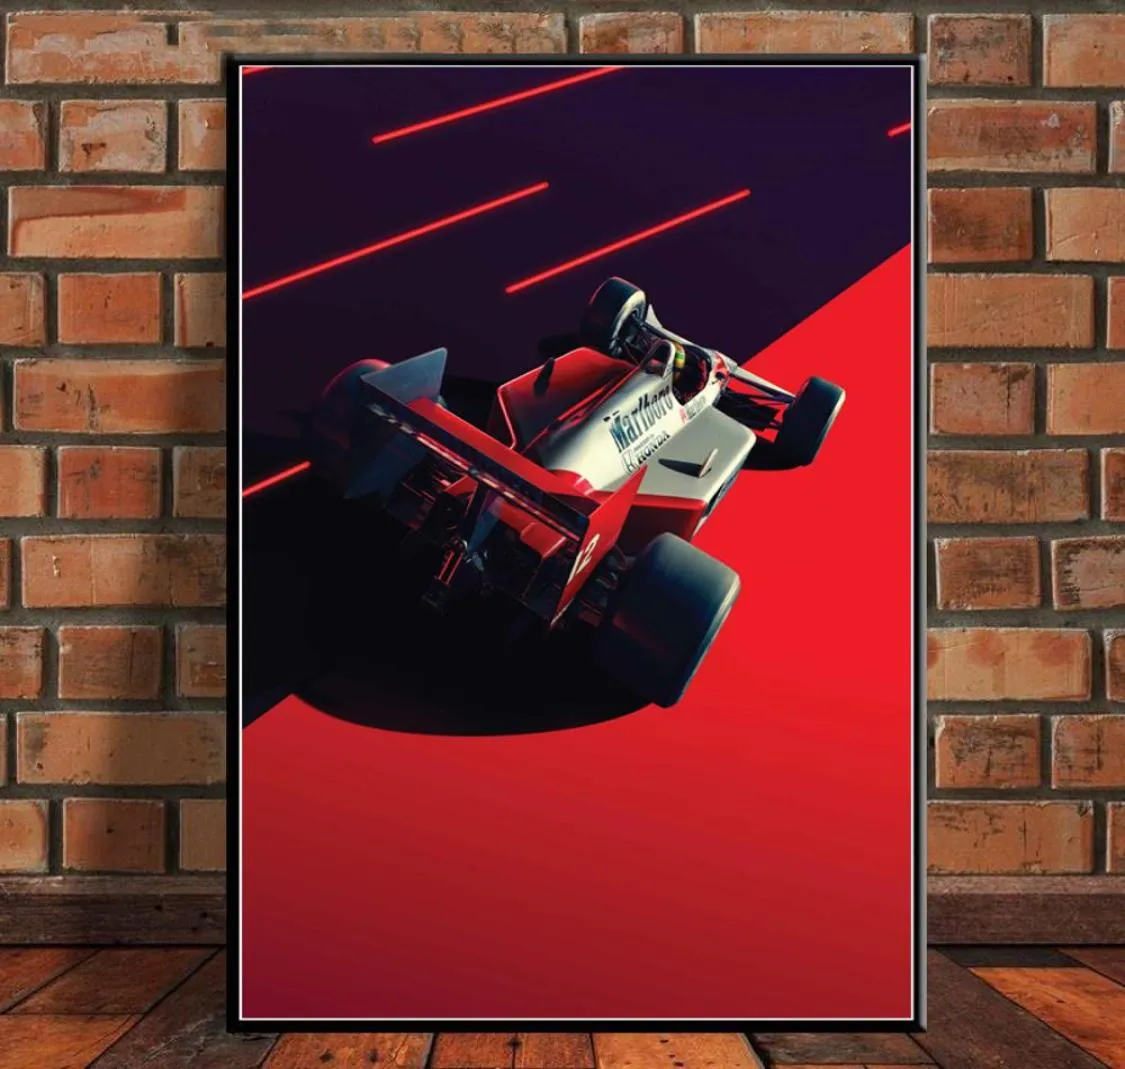 Hot Mclaren World Ayrton Senna F1 Formule Racewagen Poster Wall Art Canvas Foto Schilderij Modern Voor Thuis Kamer decor9828410